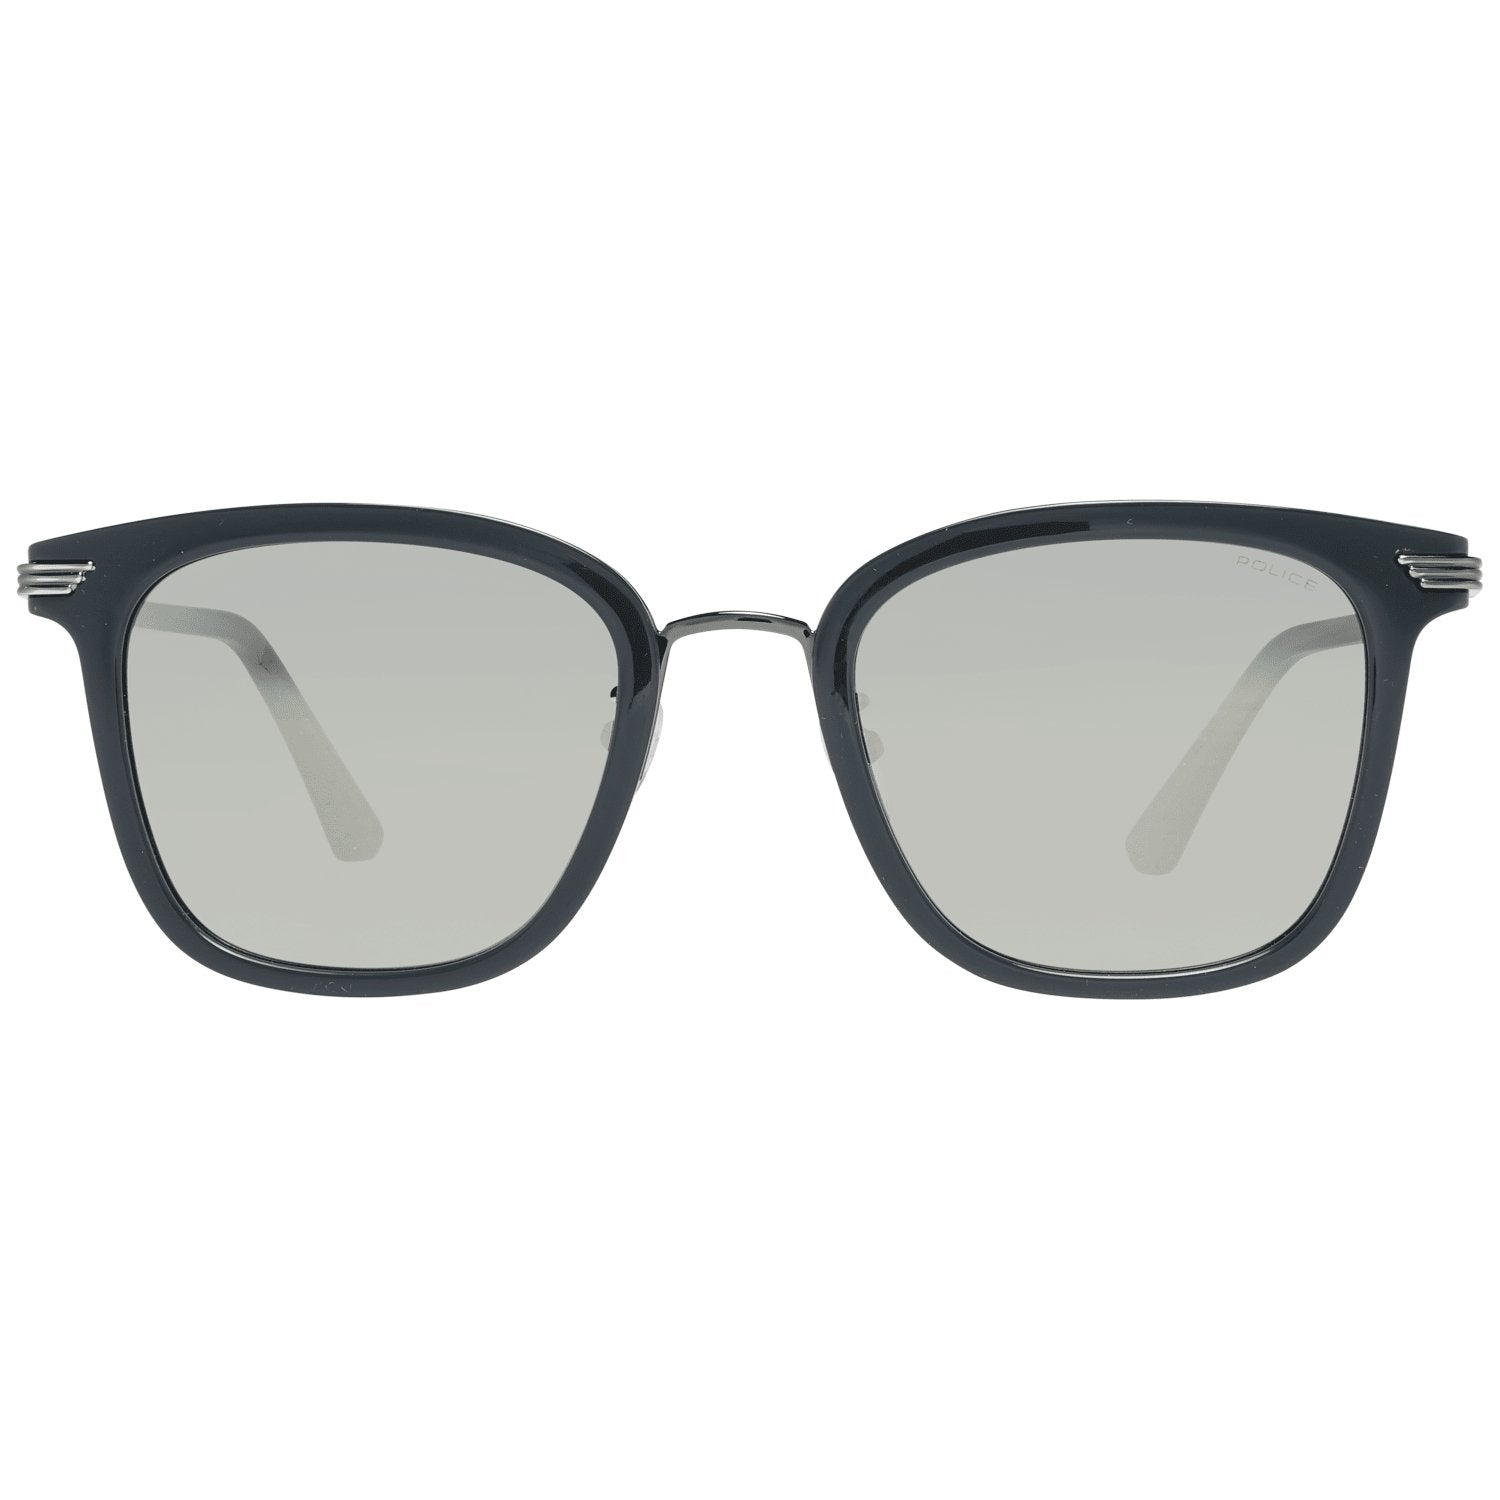 Police Grey Sunglasses for man - Fizigo